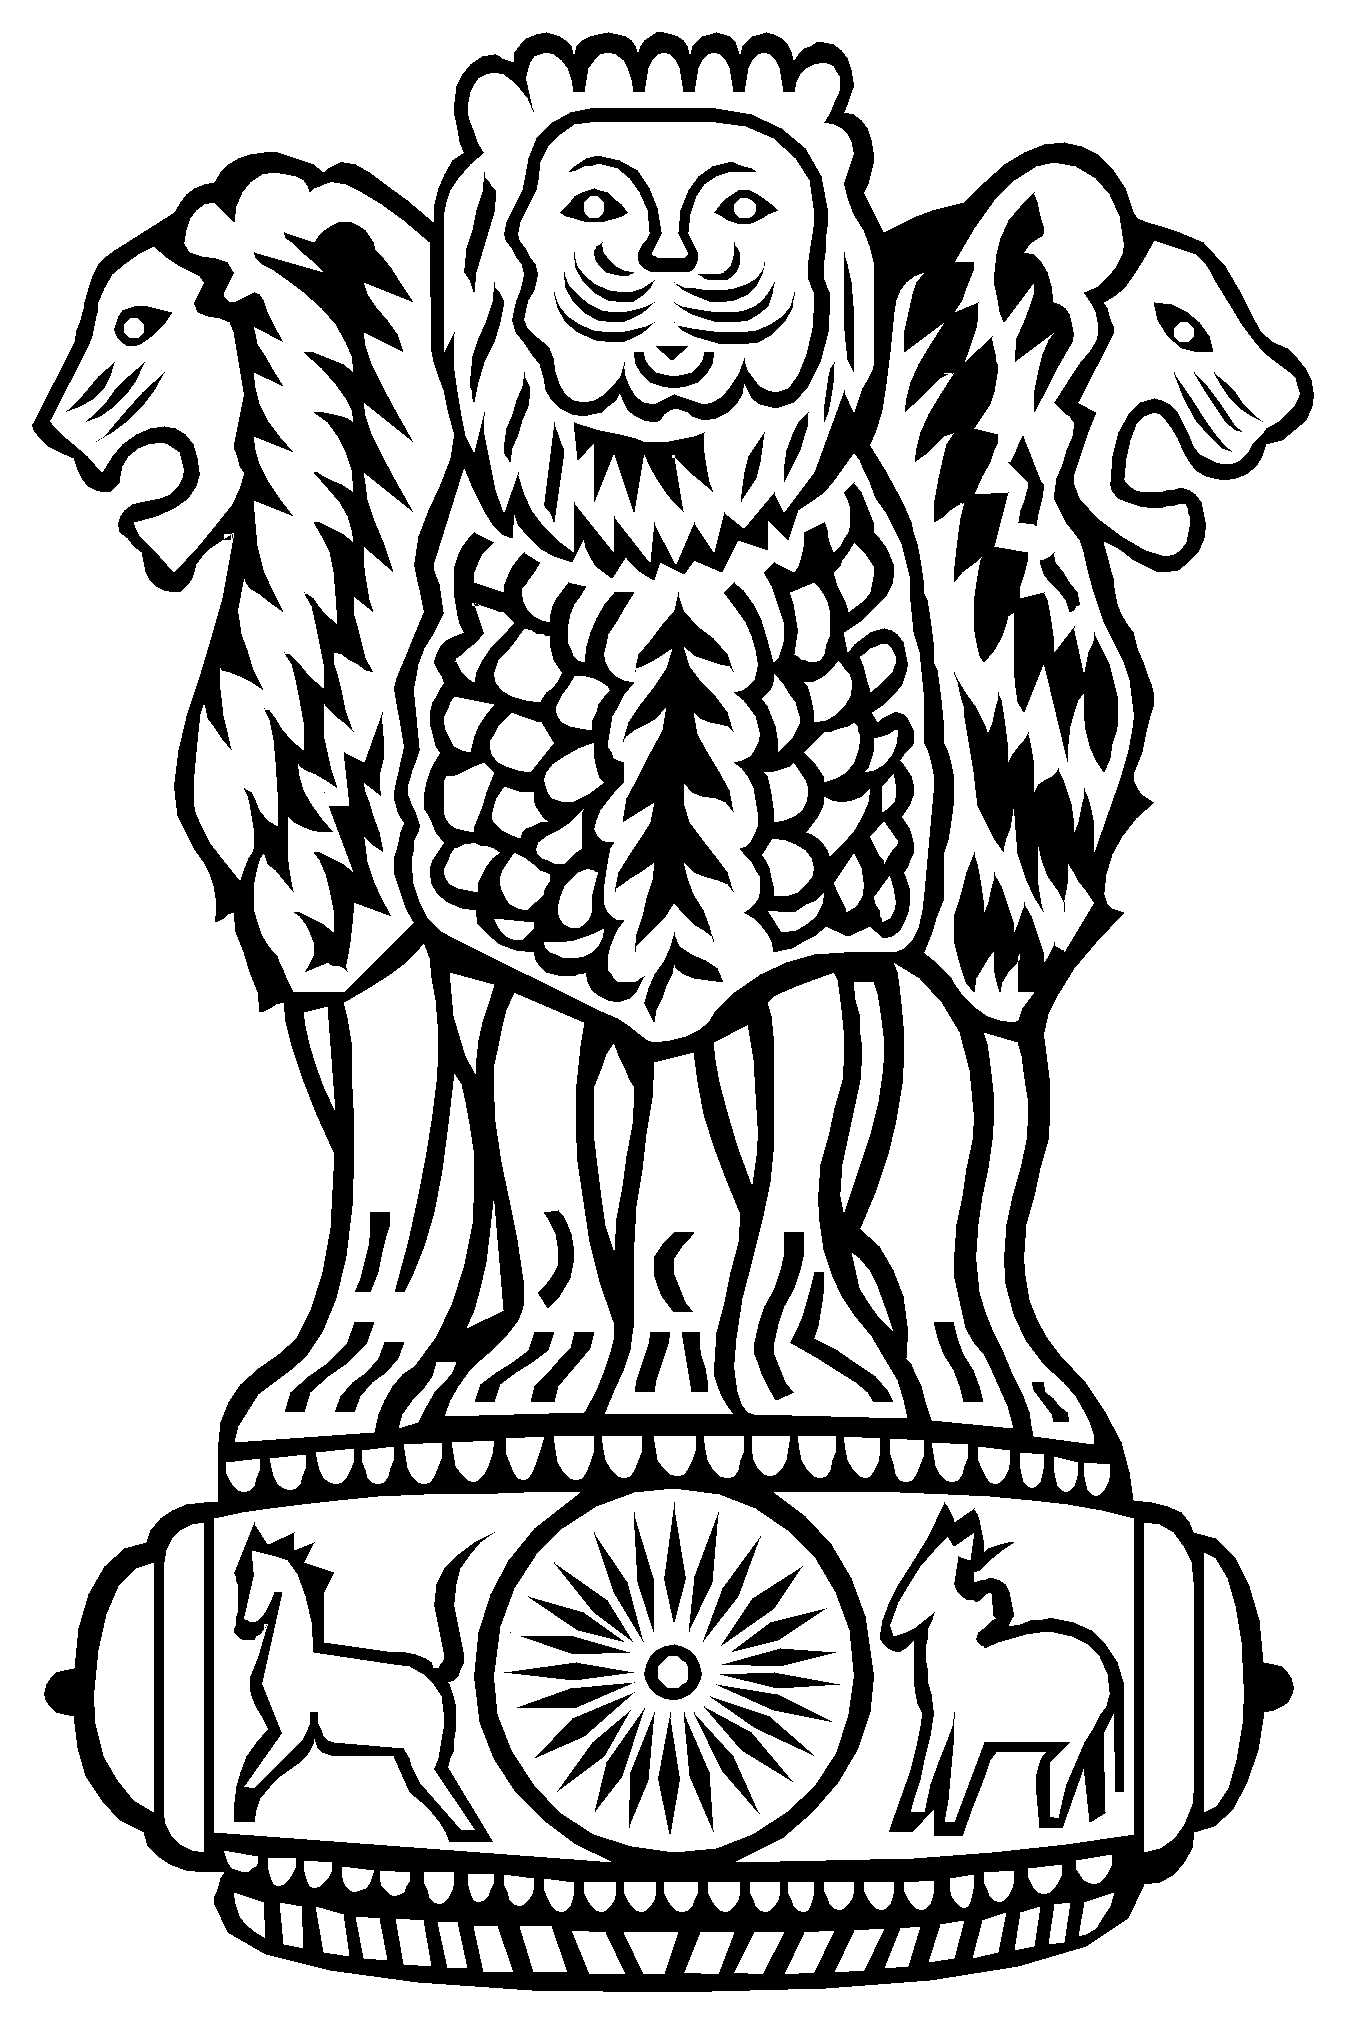 Лев символ герба